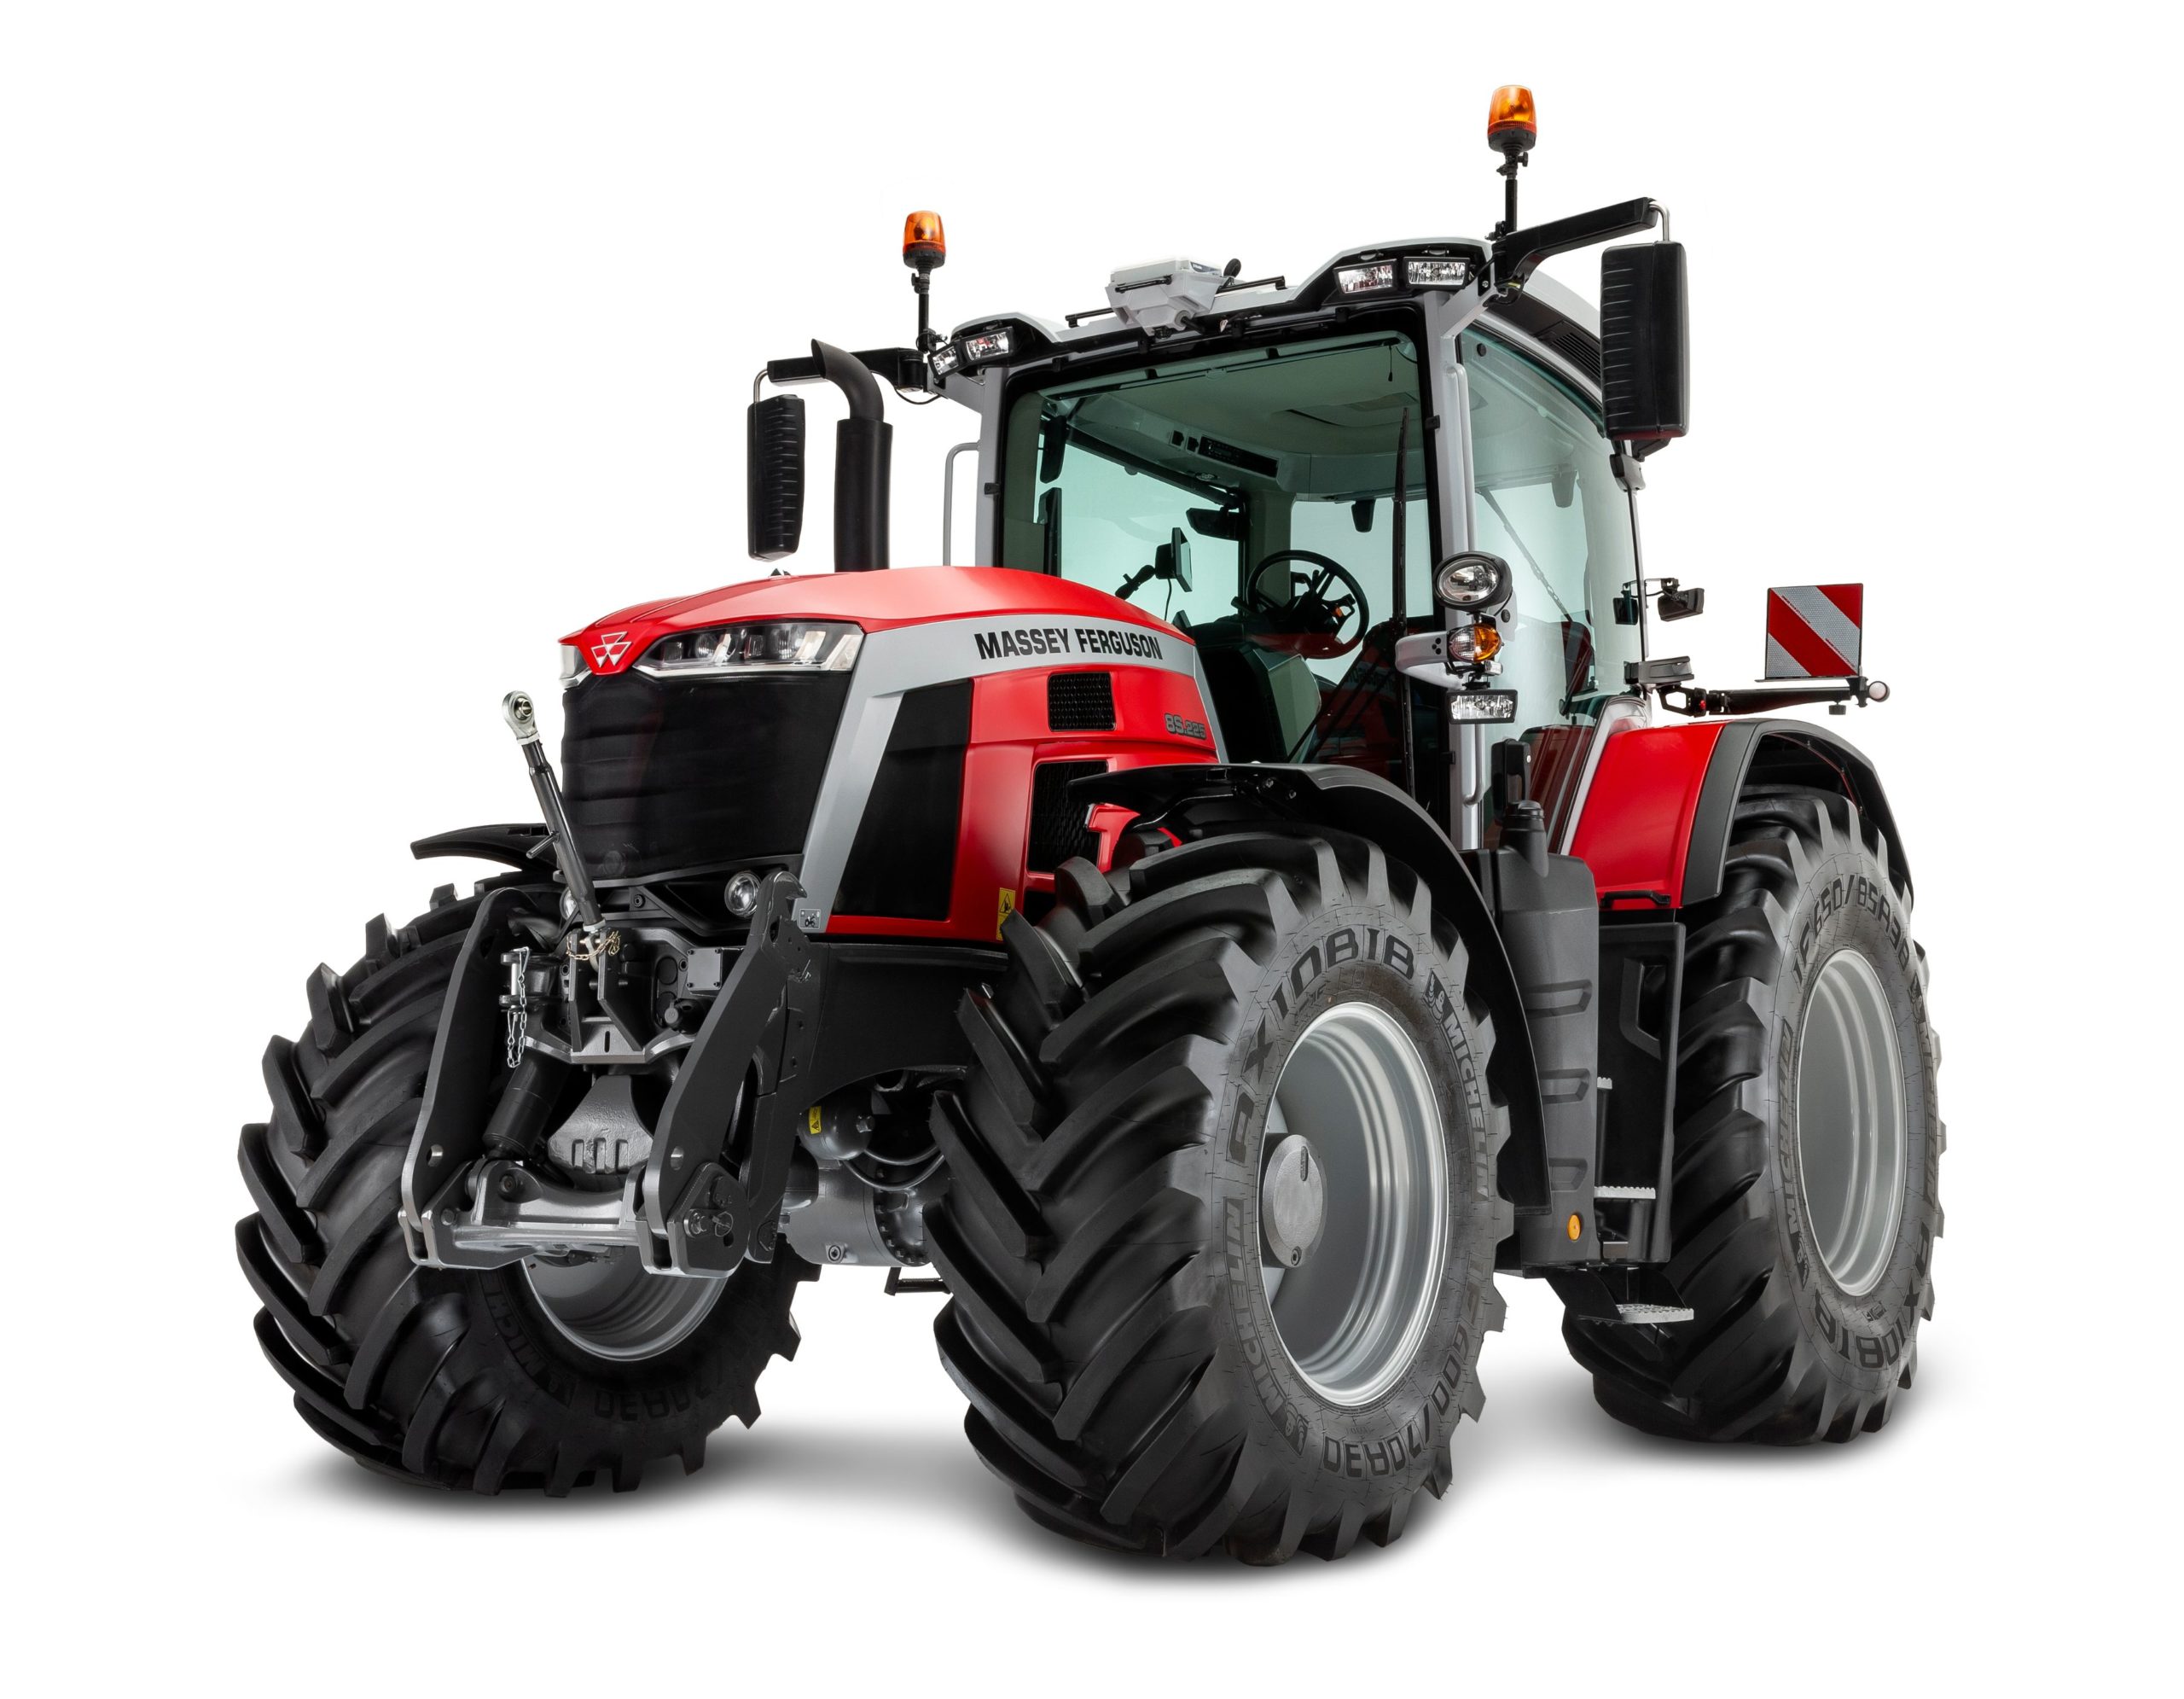 Izvanredan dizajn - serija traktora MF 8S osvojila nagradu Red Dot za proizvodni dizajn za 2021. godinu